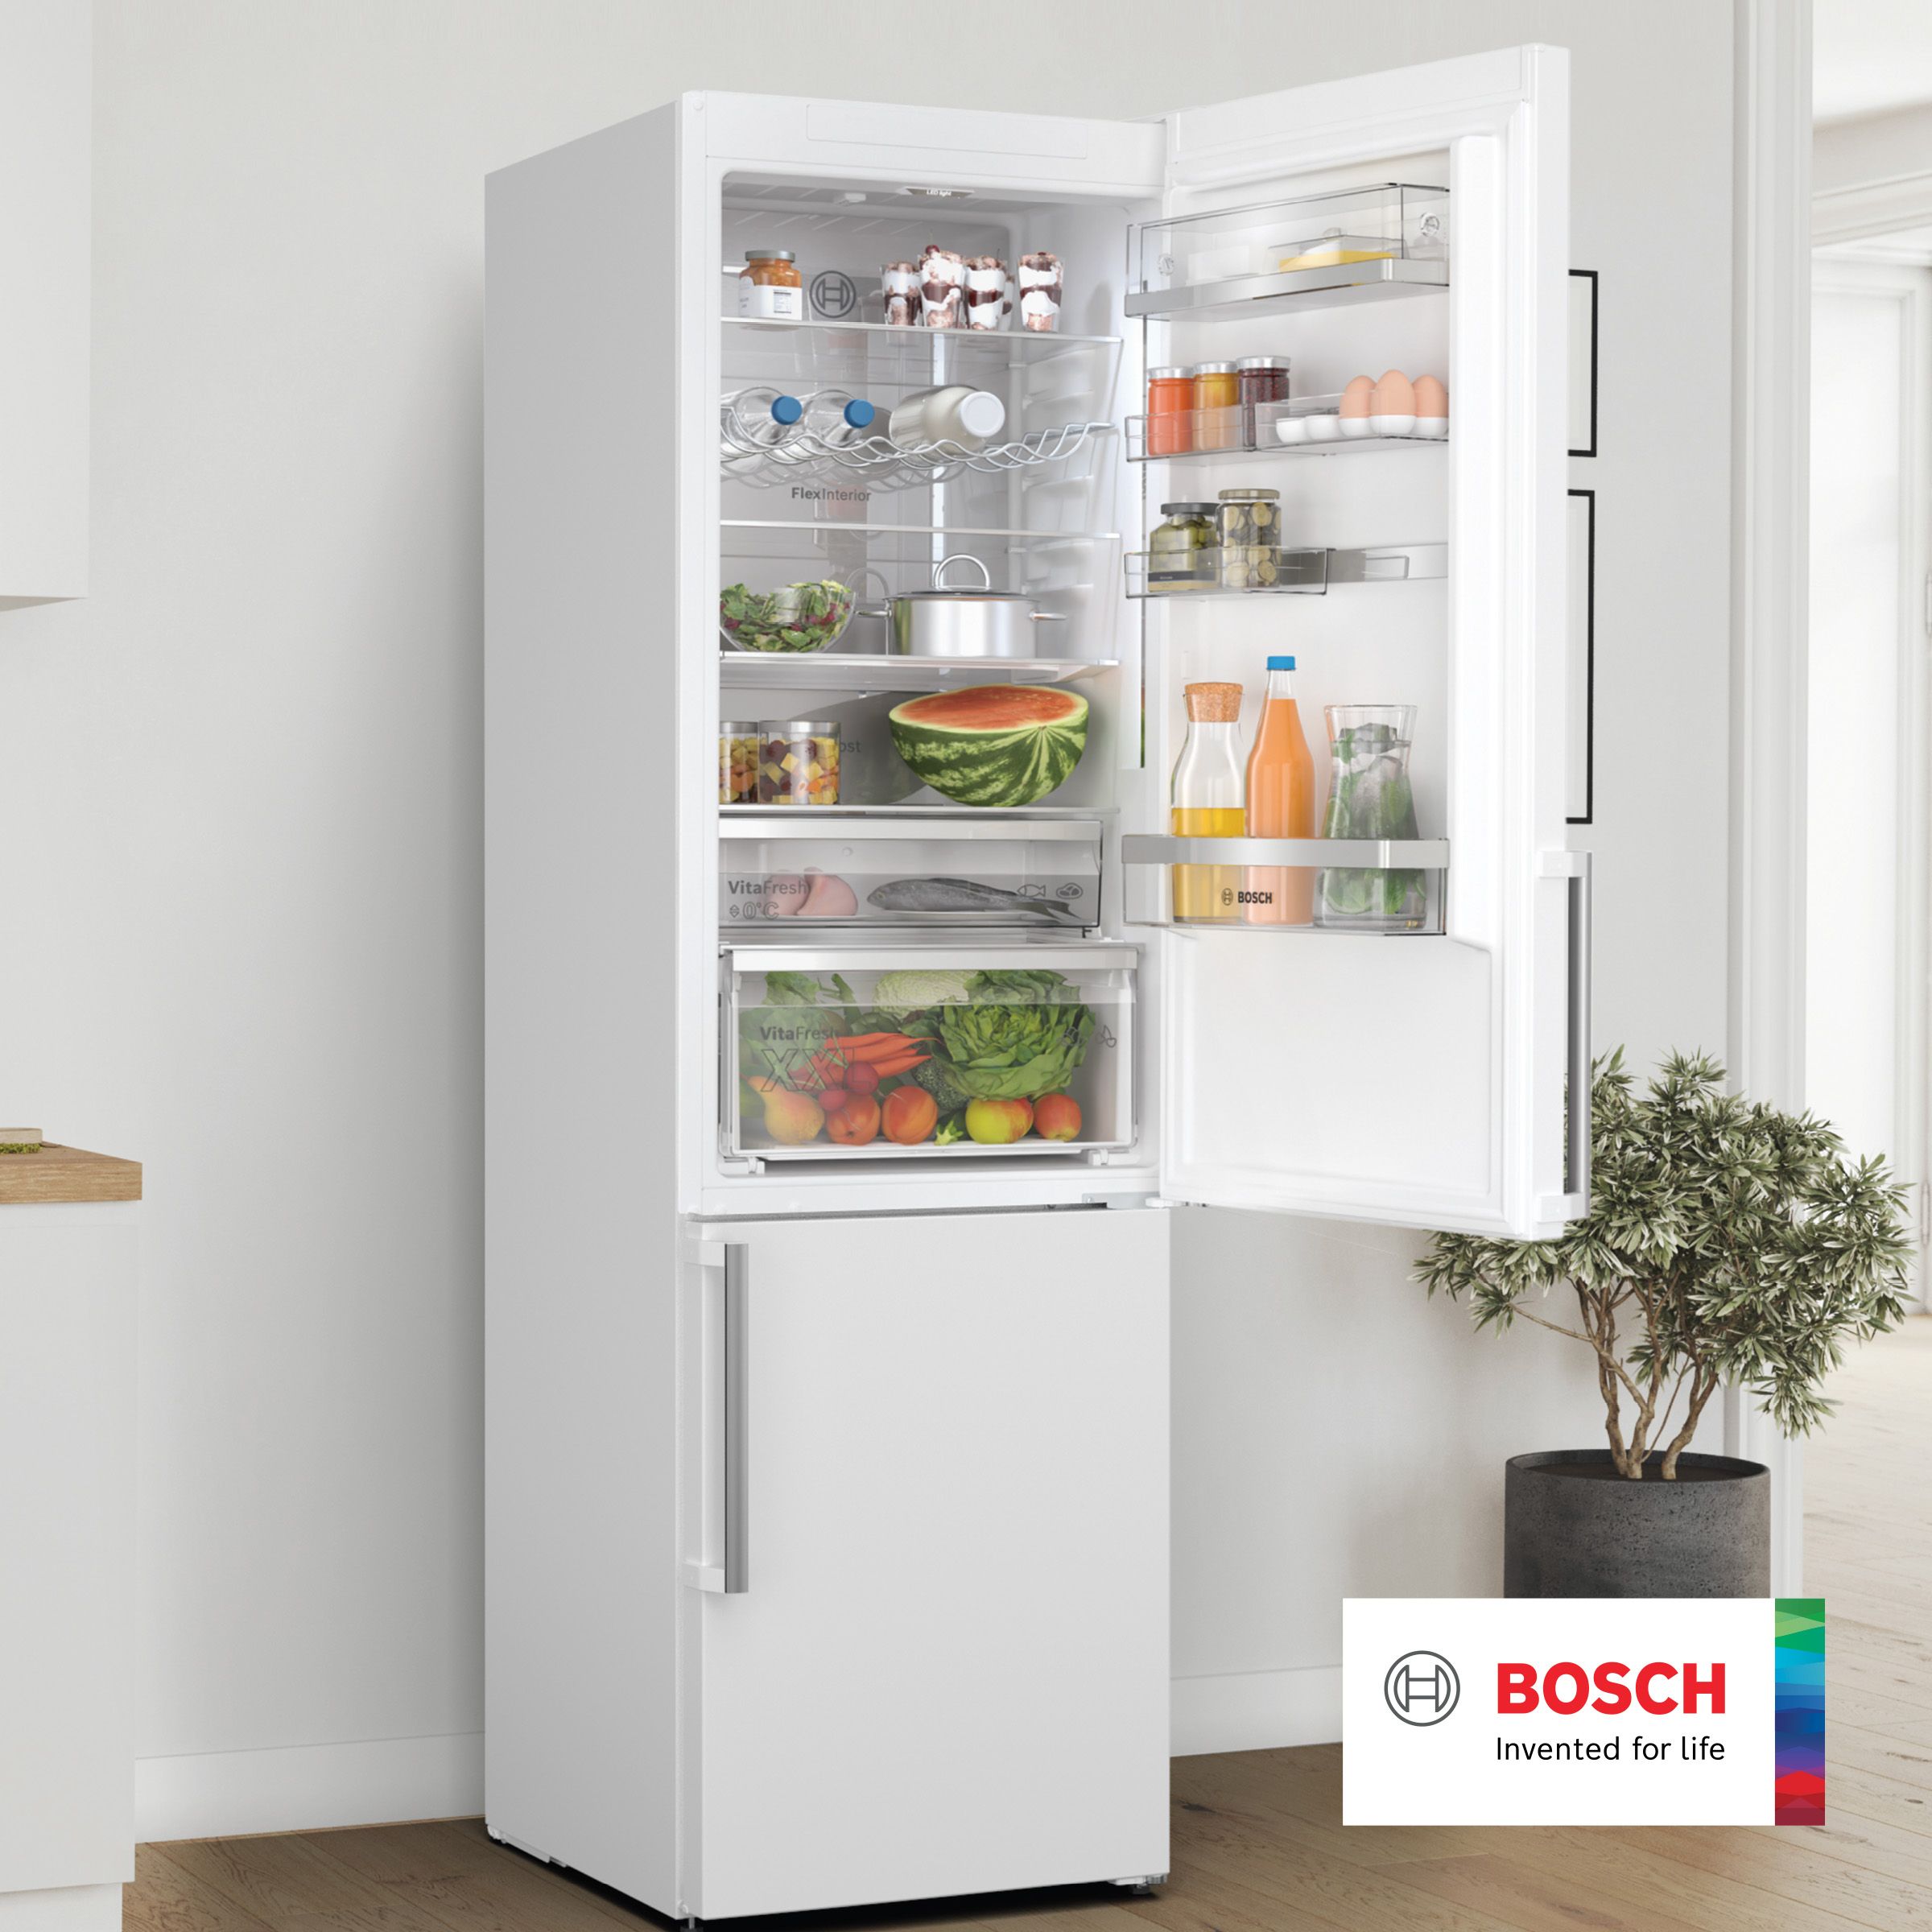 Bosch fridges